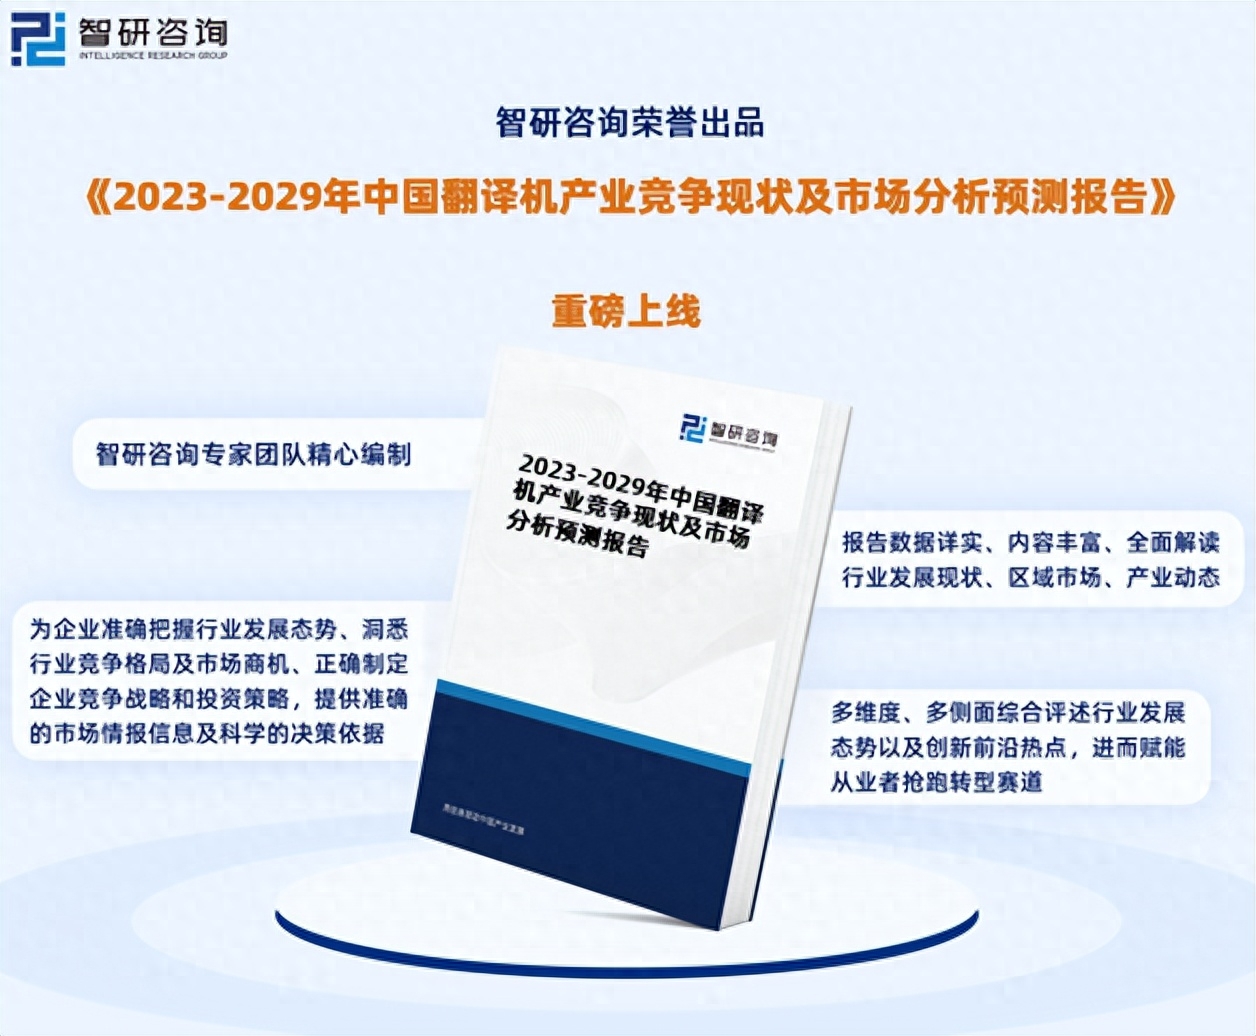 由智研咨询专家团队精心编制的《2023-2029年中国翻译机产业竞争现状及市场分析预测报告》（以下简称《报告》）重磅发布，《报告》旨在从国家经济及产业发展的战略入手，分析翻译